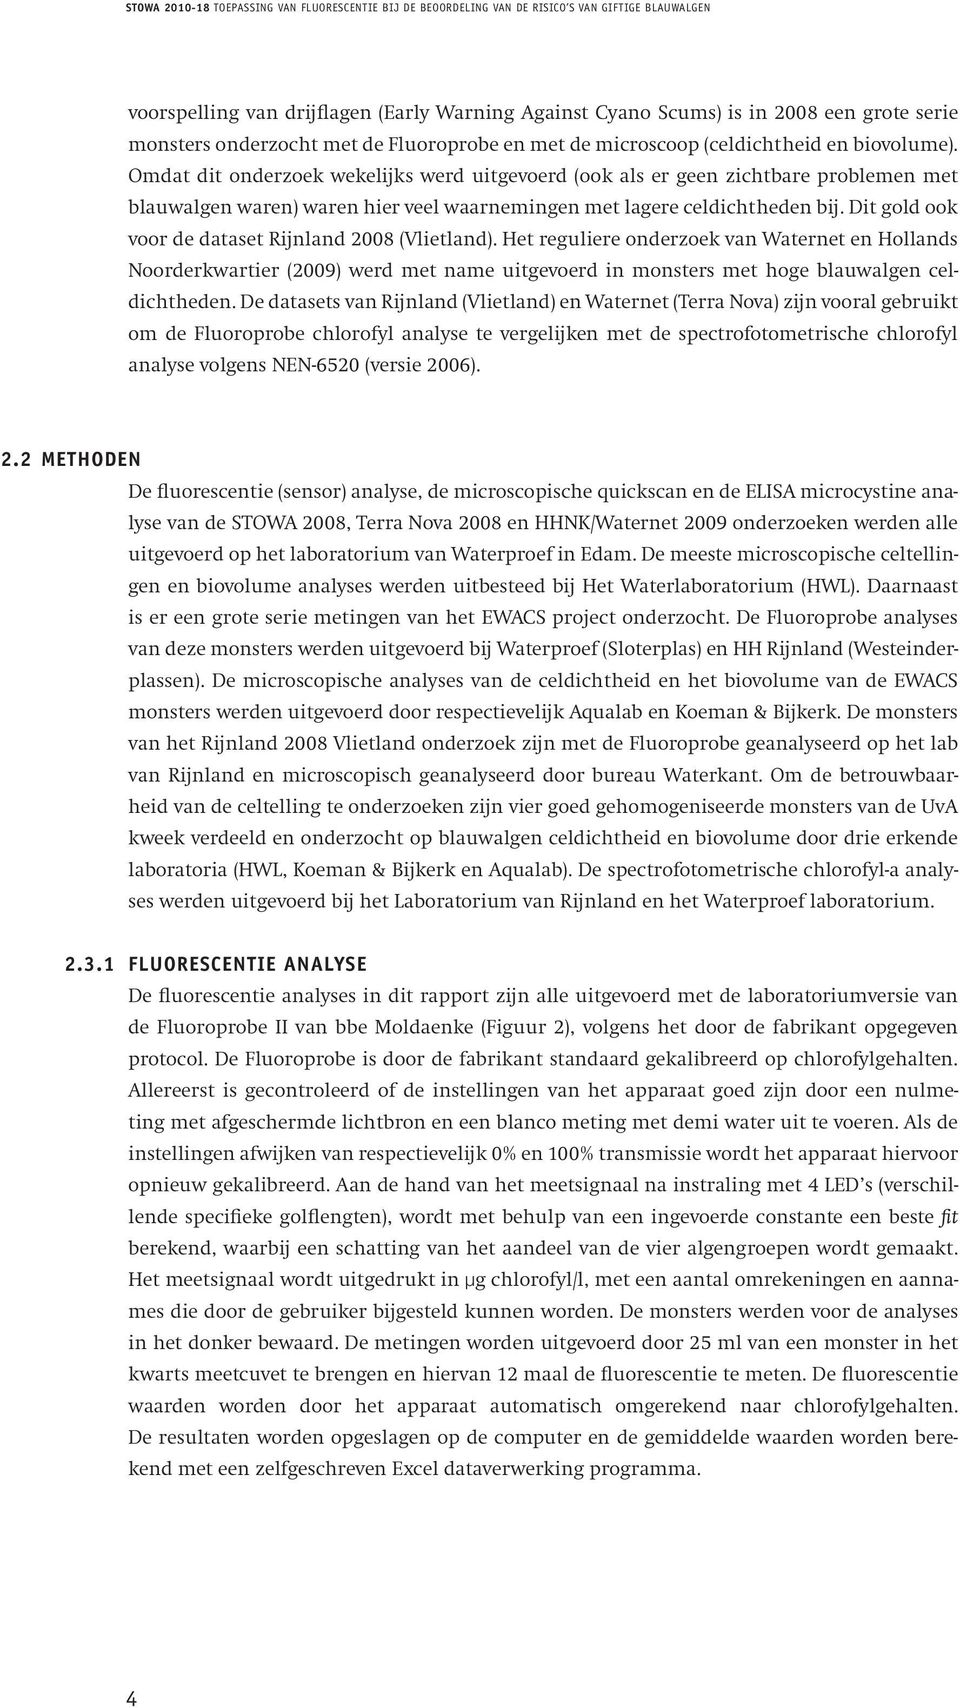 Dit gold ook voor de dataset Rijnland 2008 (Vlietland). Het reguliere onderzoek van Waternet en Hollands Noorderkwartier (2009) werd met name uitgevoerd in monsters met hoge blauwalgen celdichtheden.